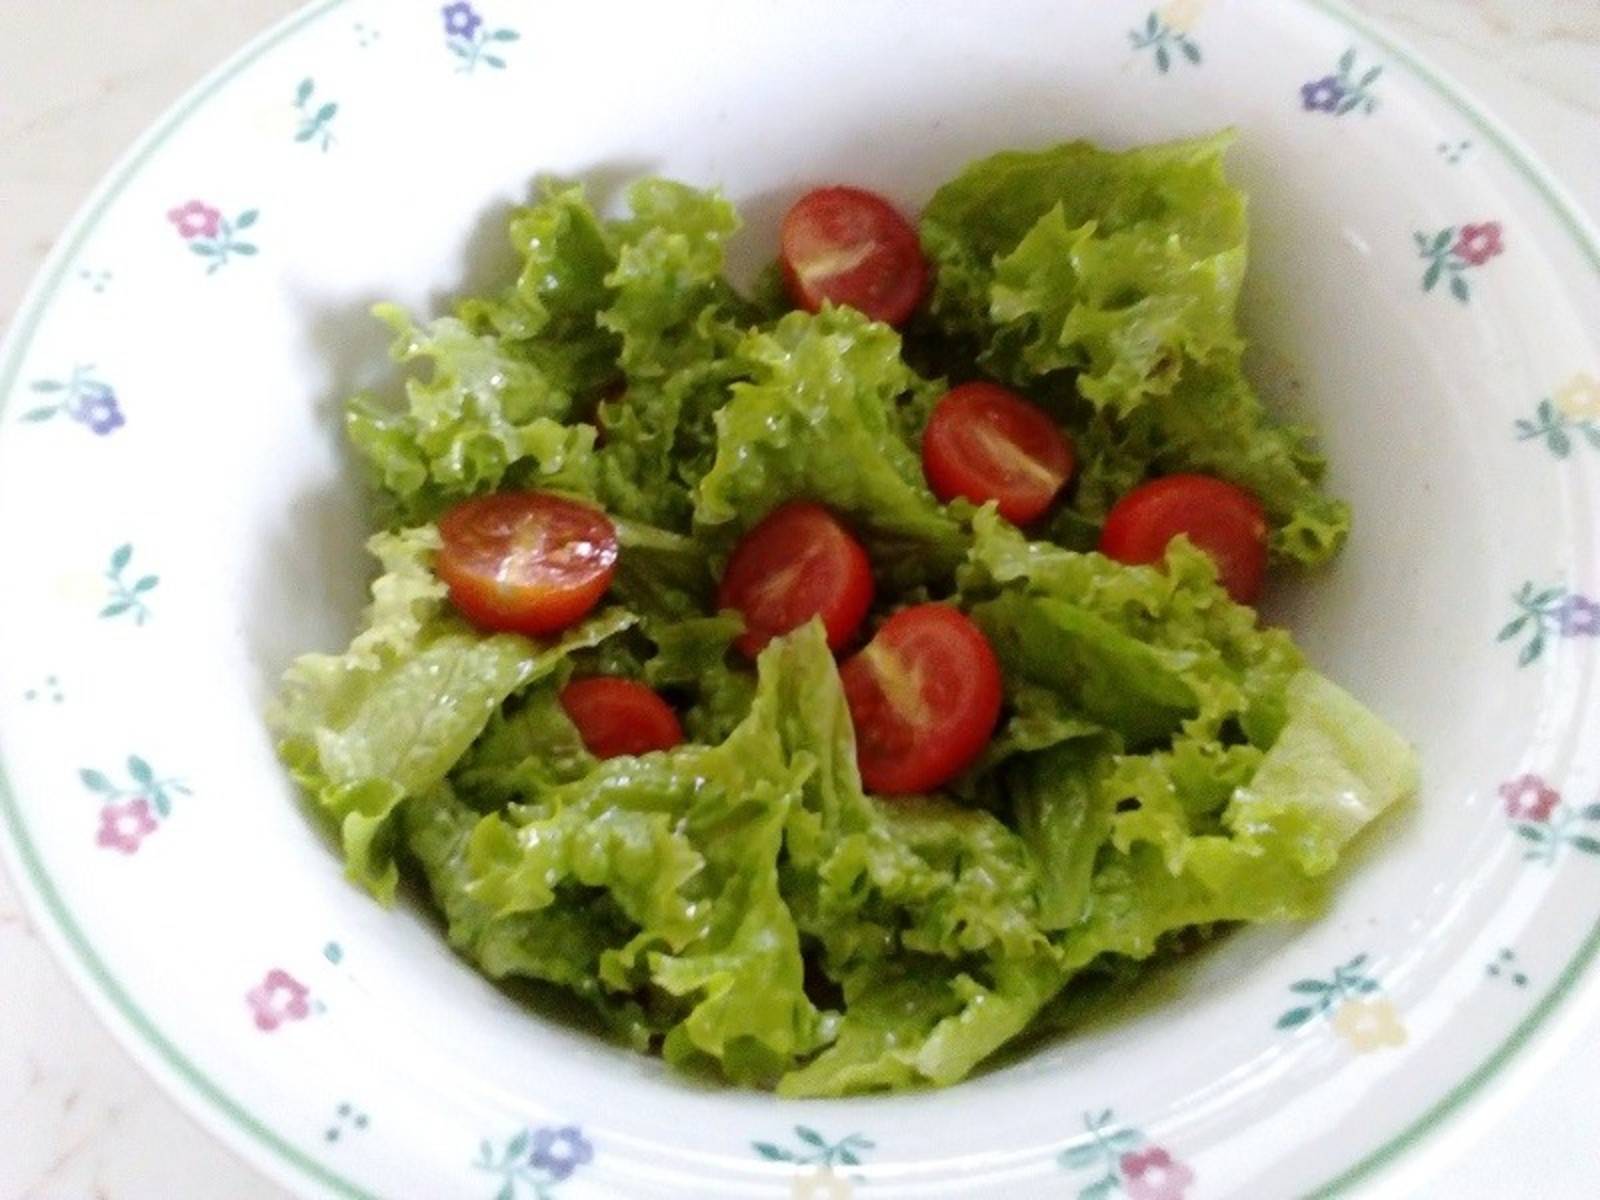 Bunter Frisée-Salat